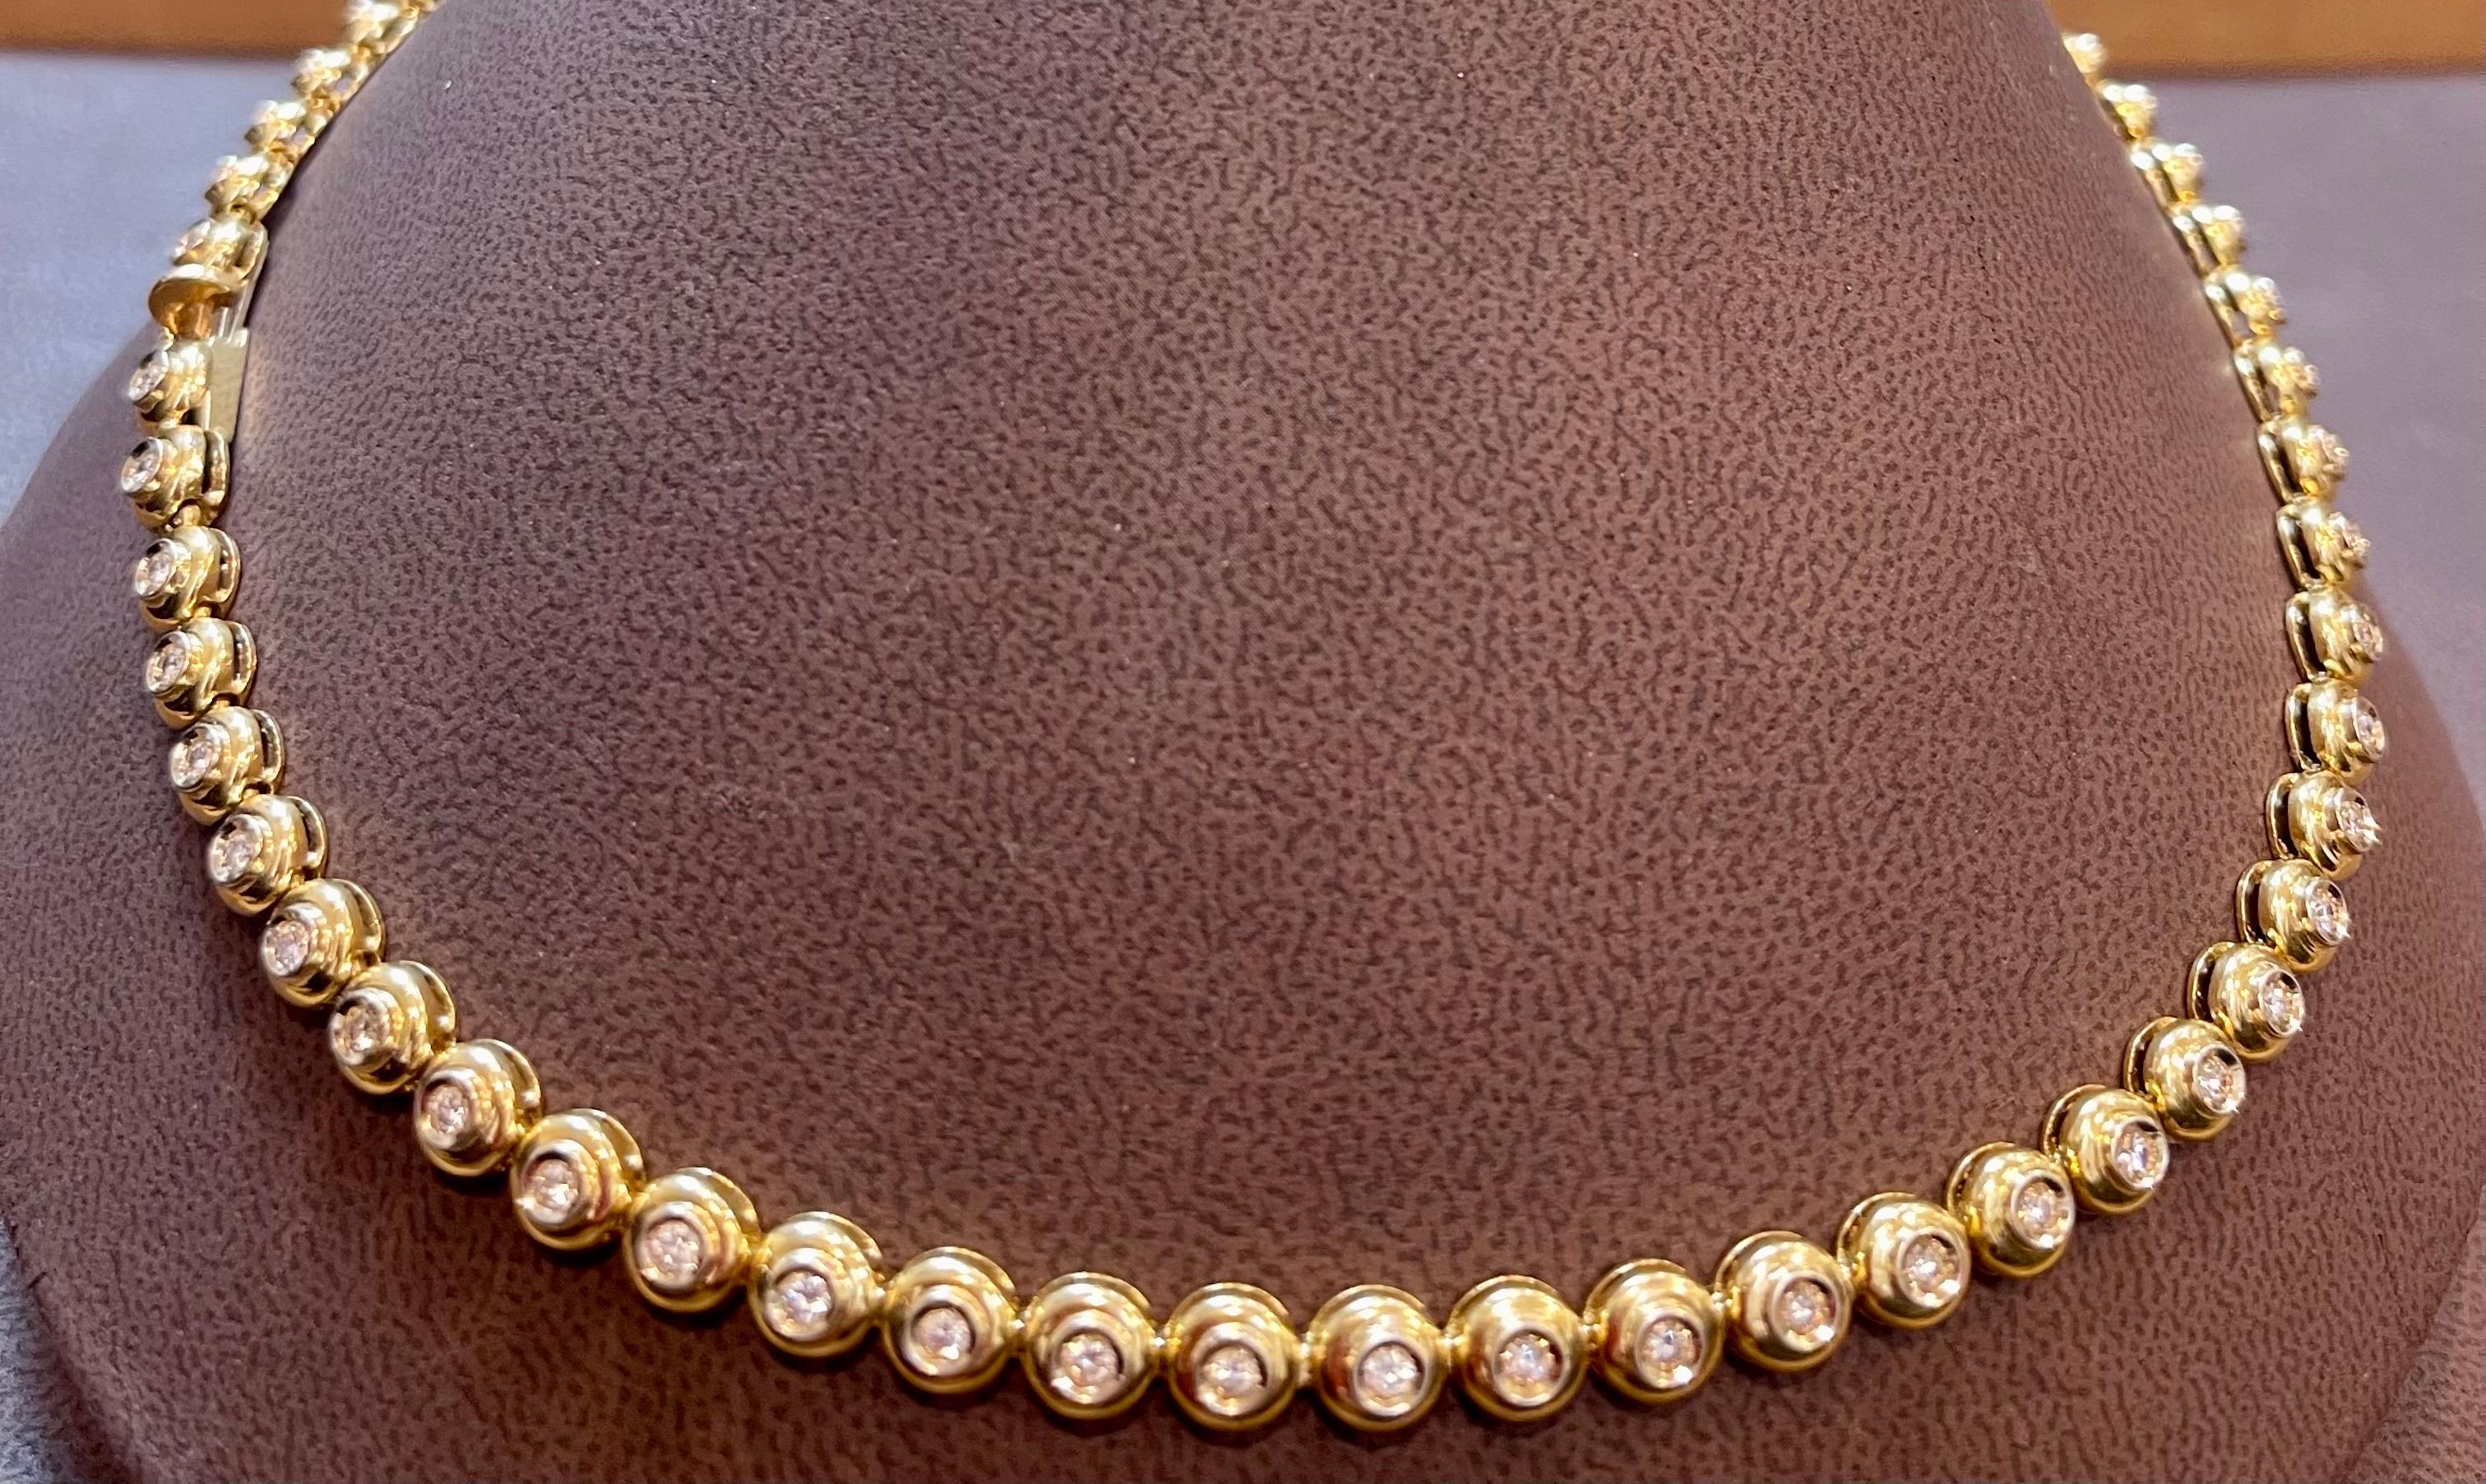 Round 6 Pointer, 4.5Ct Diamond Tennis Necklace 18Karat Yellow Gold 52 Gm, Unisex 9